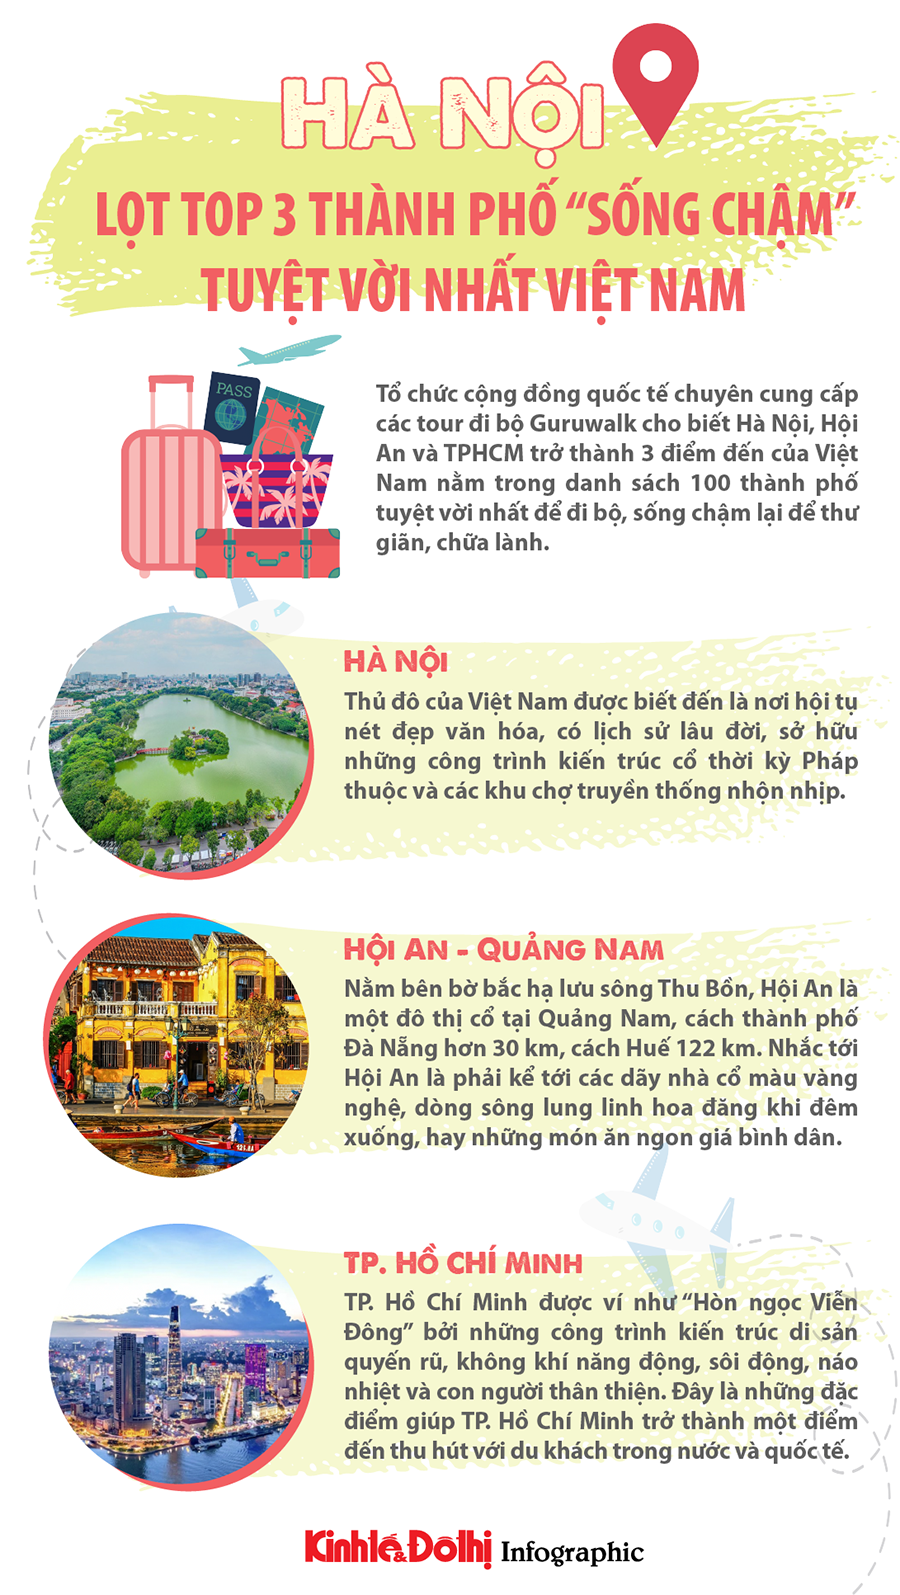 Hà Nội lọt top 3 thành phố "sống chậm" tuyệt vời nhất Việt Nam - Ảnh 1